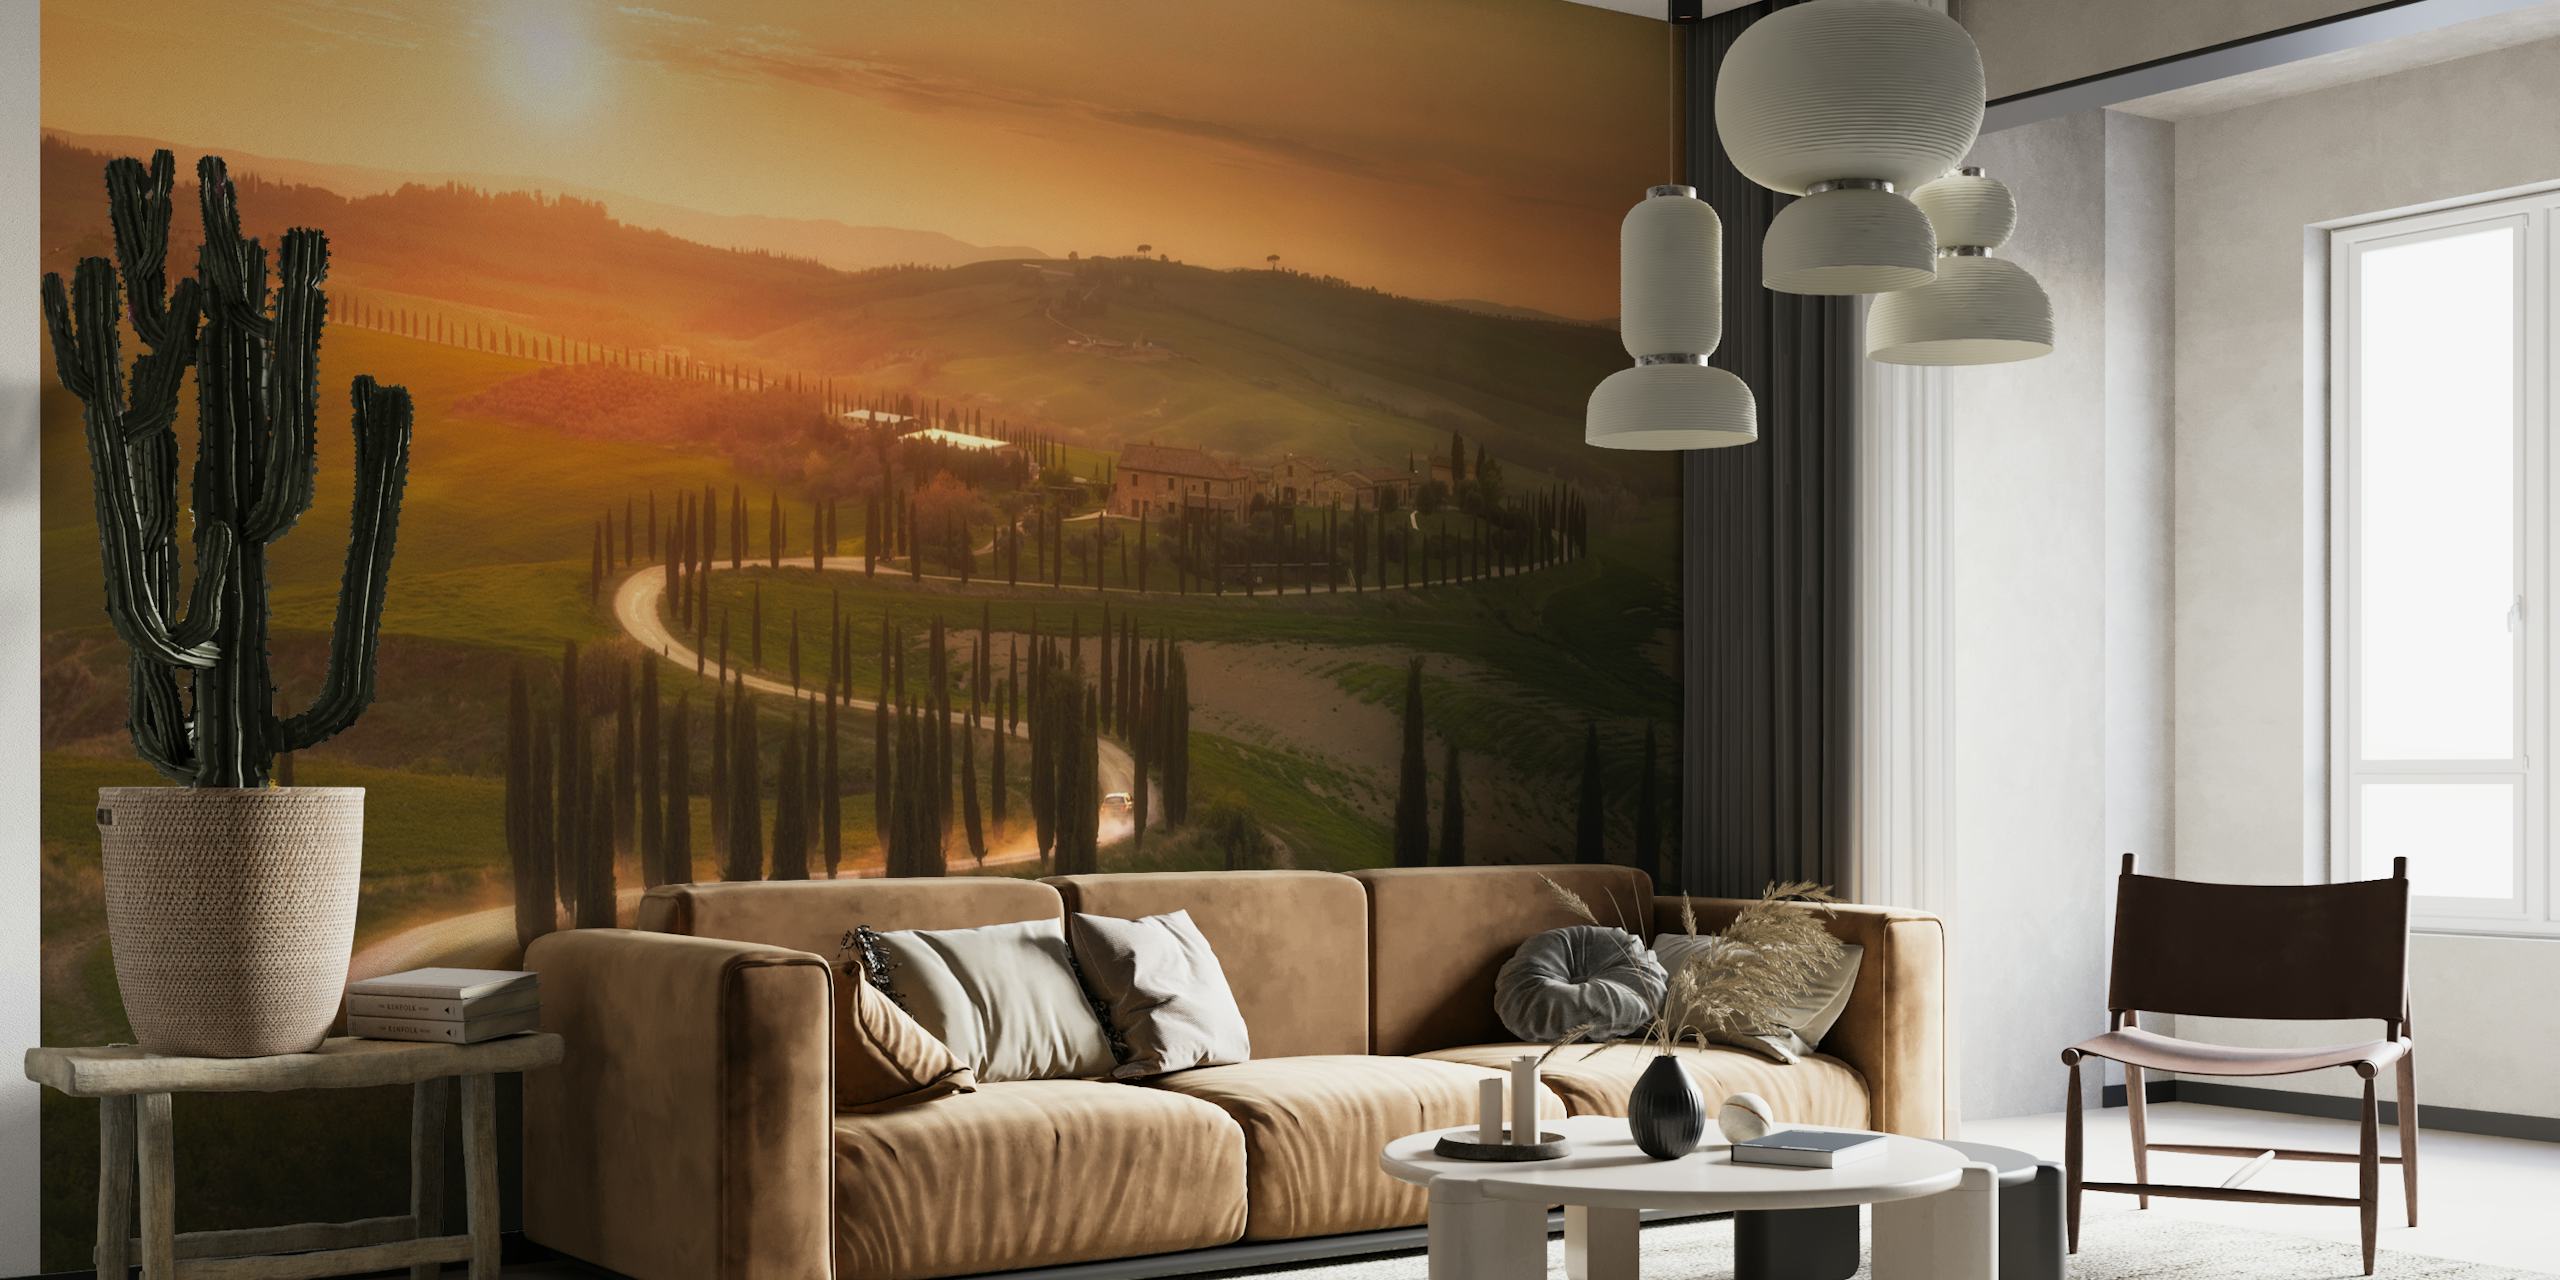 Fotomural de puesta de sol sobre las colinas de la Toscana que representa un pintoresco paisaje nocturno.